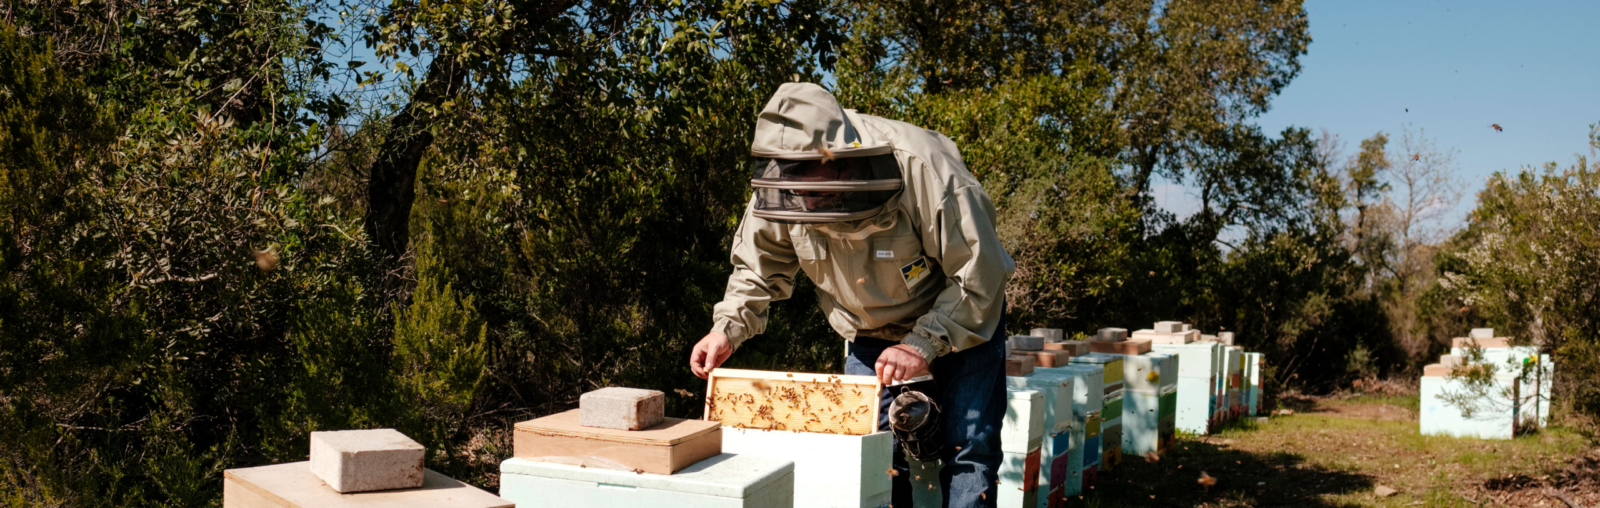 apiculteur en action